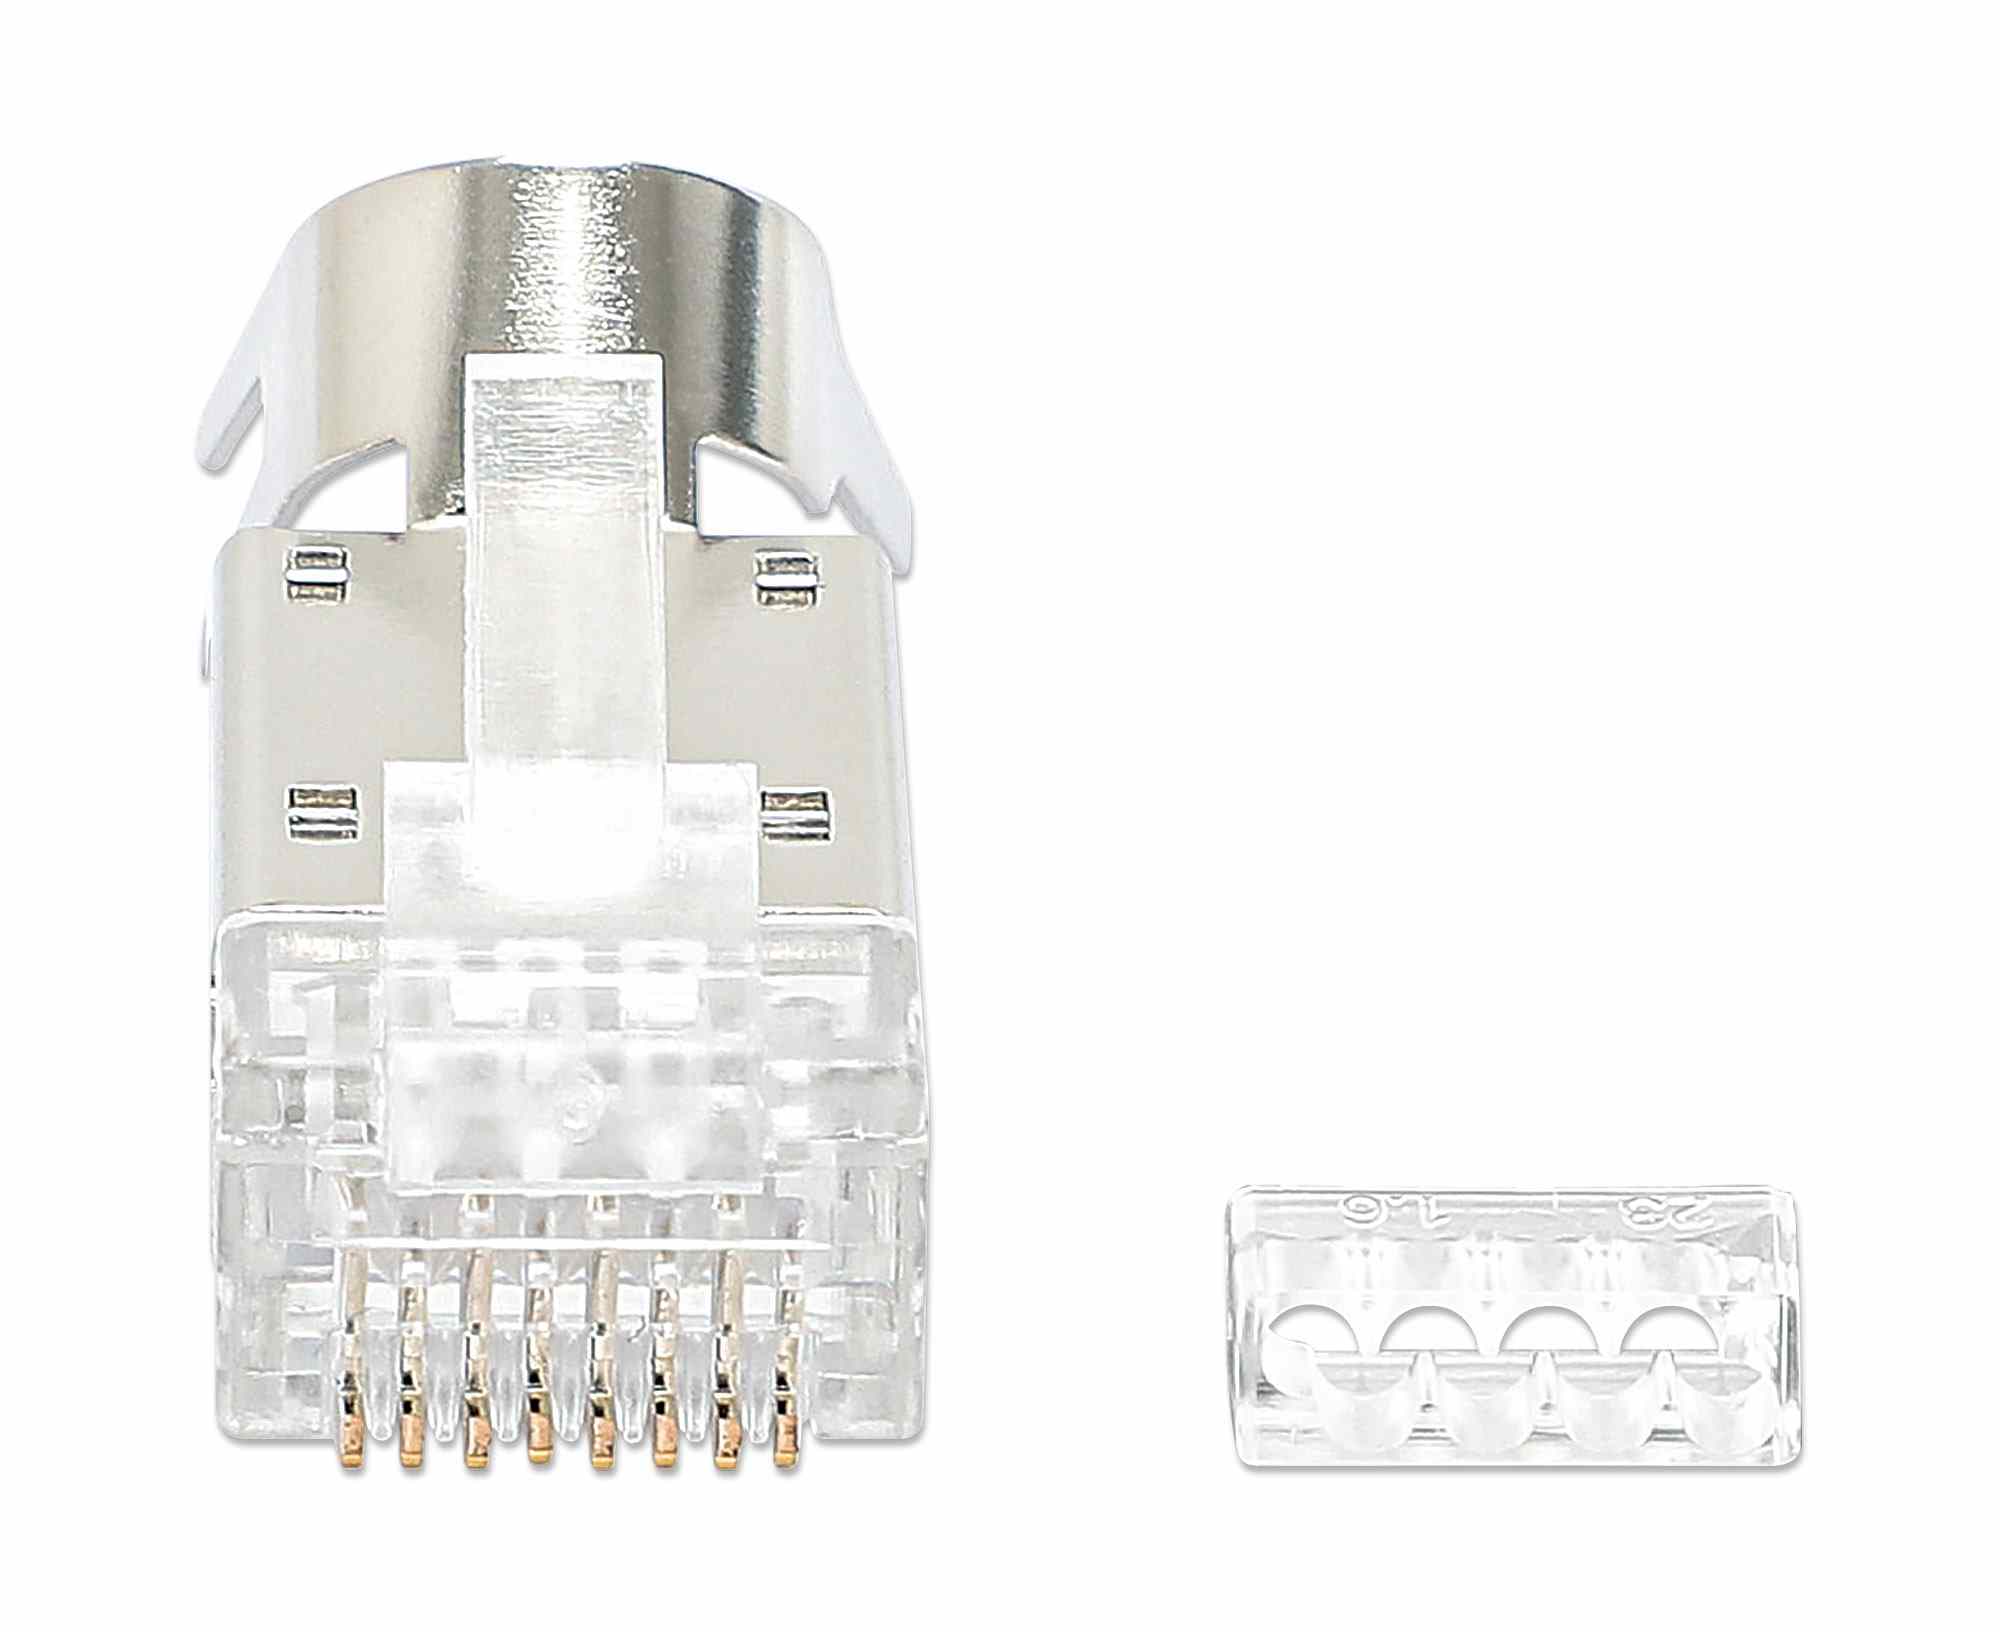 Intellinet konektor RJ45, Cat6A, tienený STP, 50µ, drôt a kábel, 70 ks v balení0 